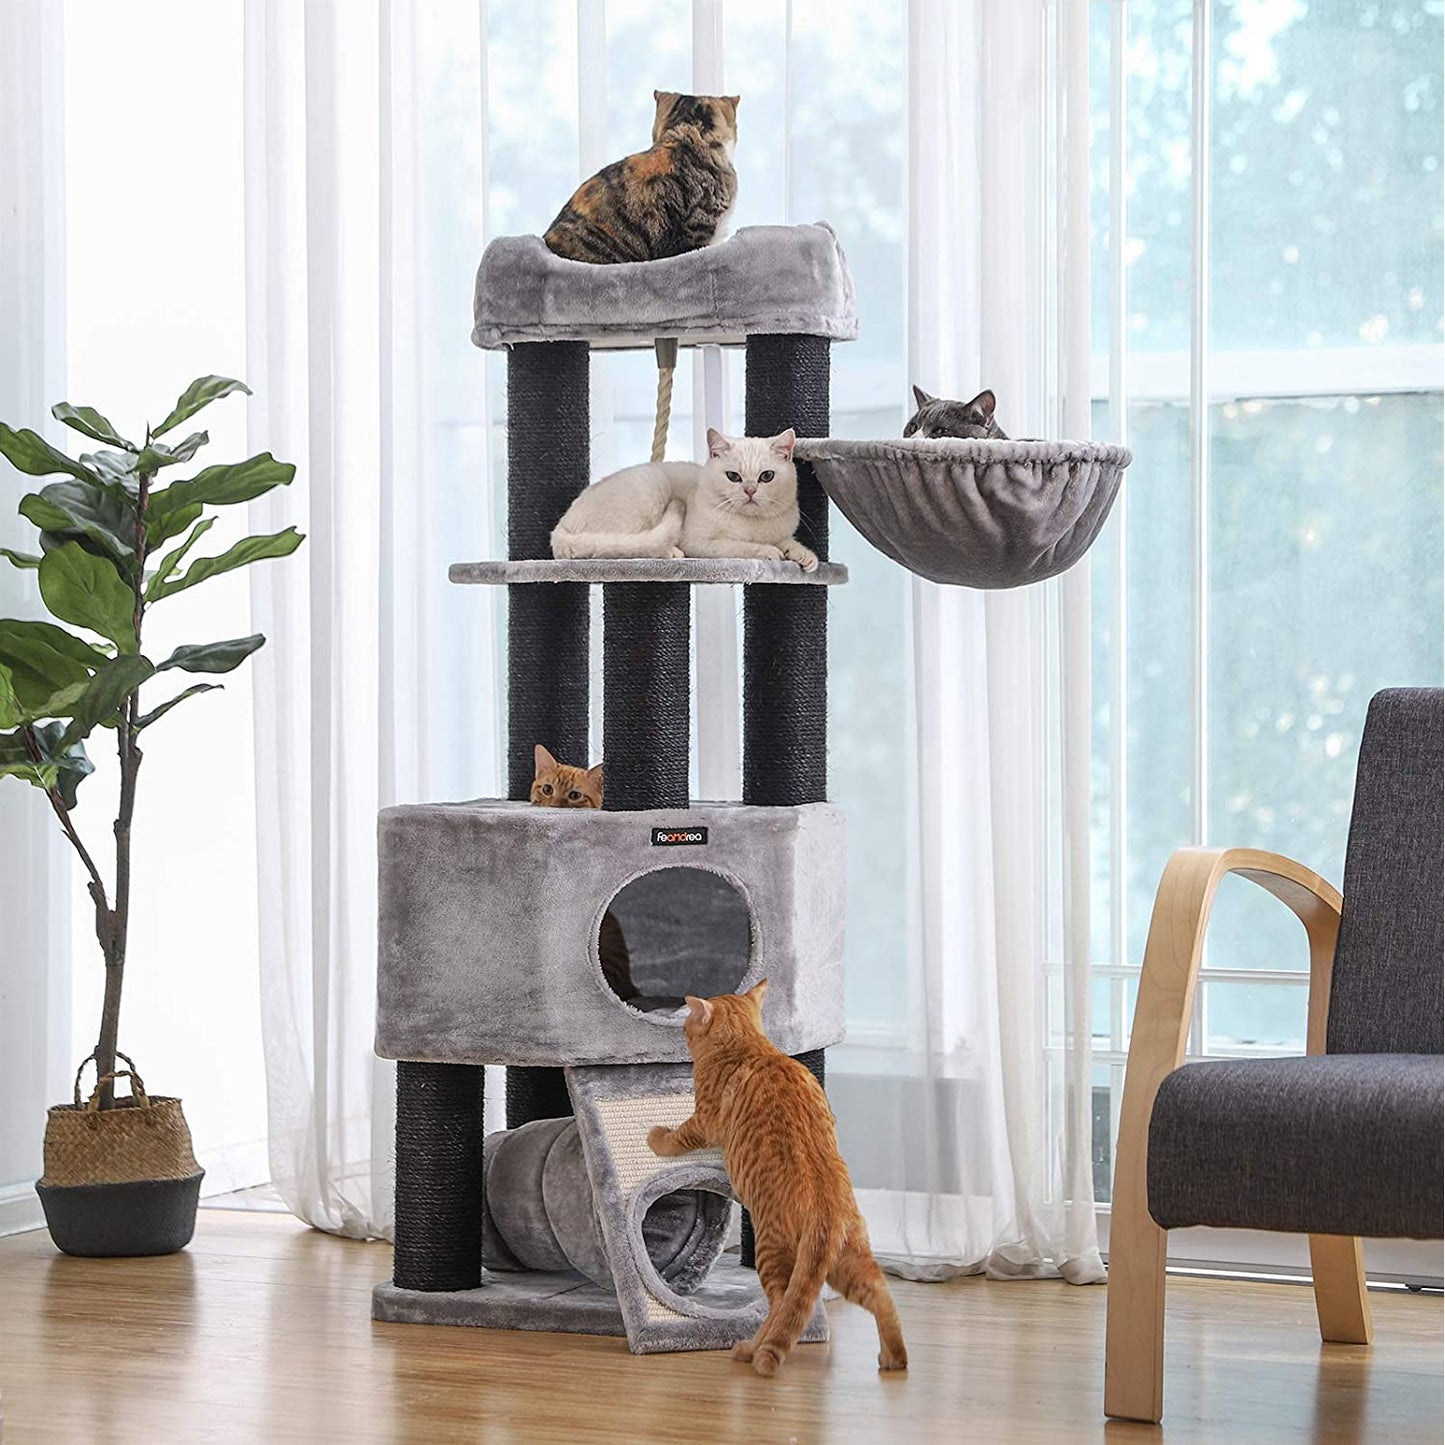 Nancy's Kattenboom XL - Luxe Kattenhuis - Krabpaal - Katten - Voor 4 katten - 50 x 50 x 141 cm (L x B x H)